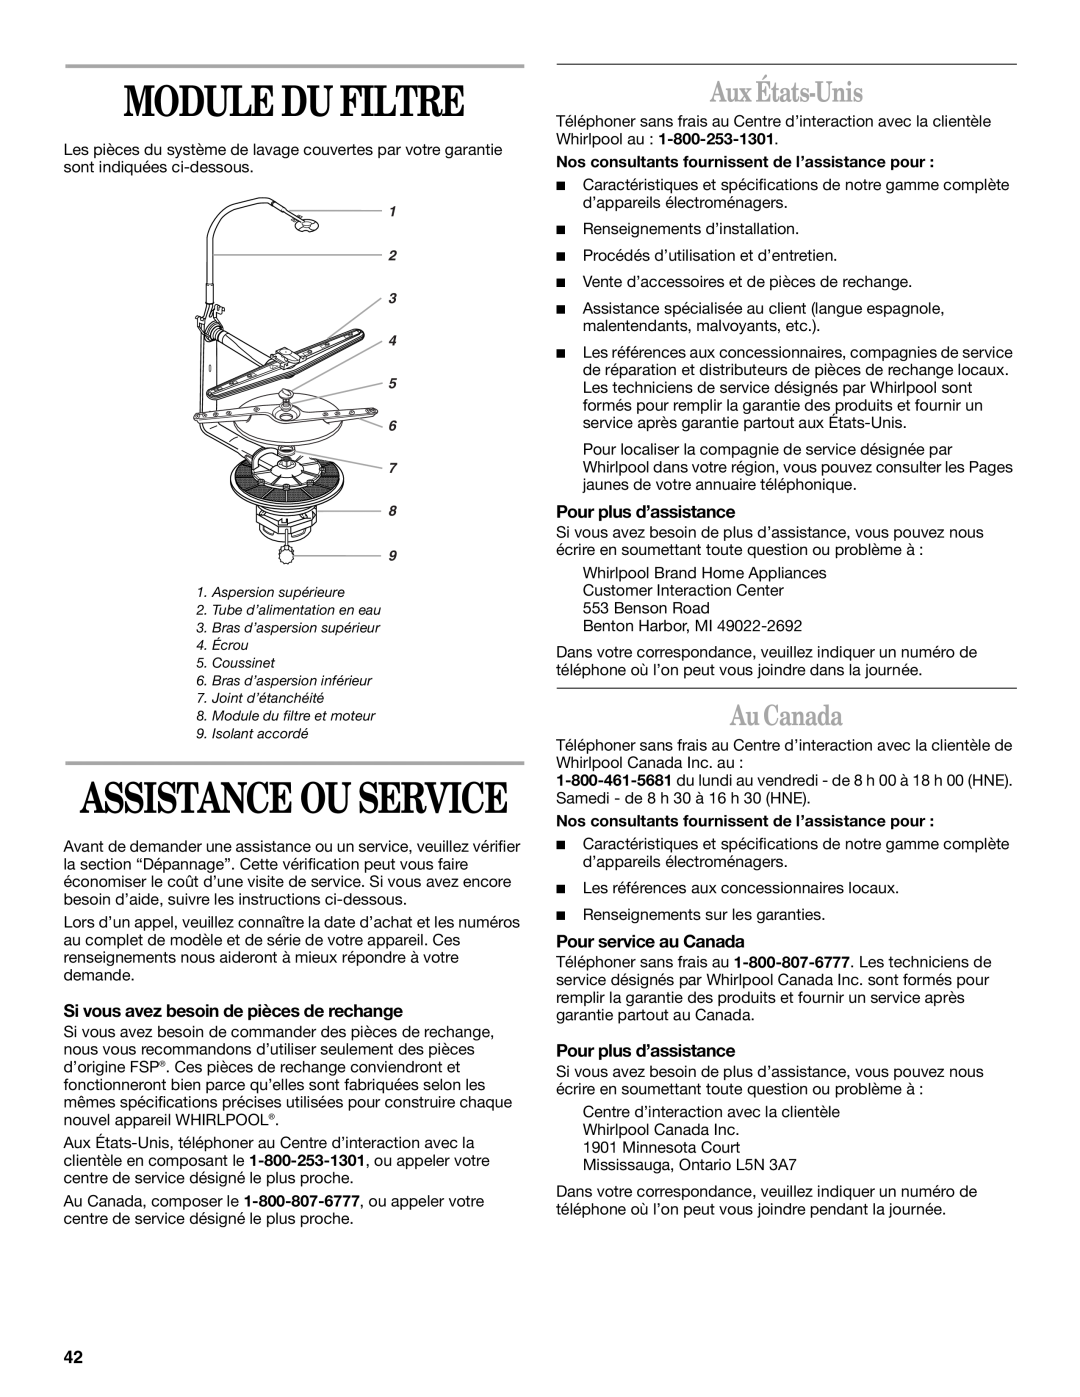 Whirlpool 945, 941 manual Module Du Filtre, Assistance Ou Service, Aux États-Unis, Au Canada, Pour plus d’assistance 